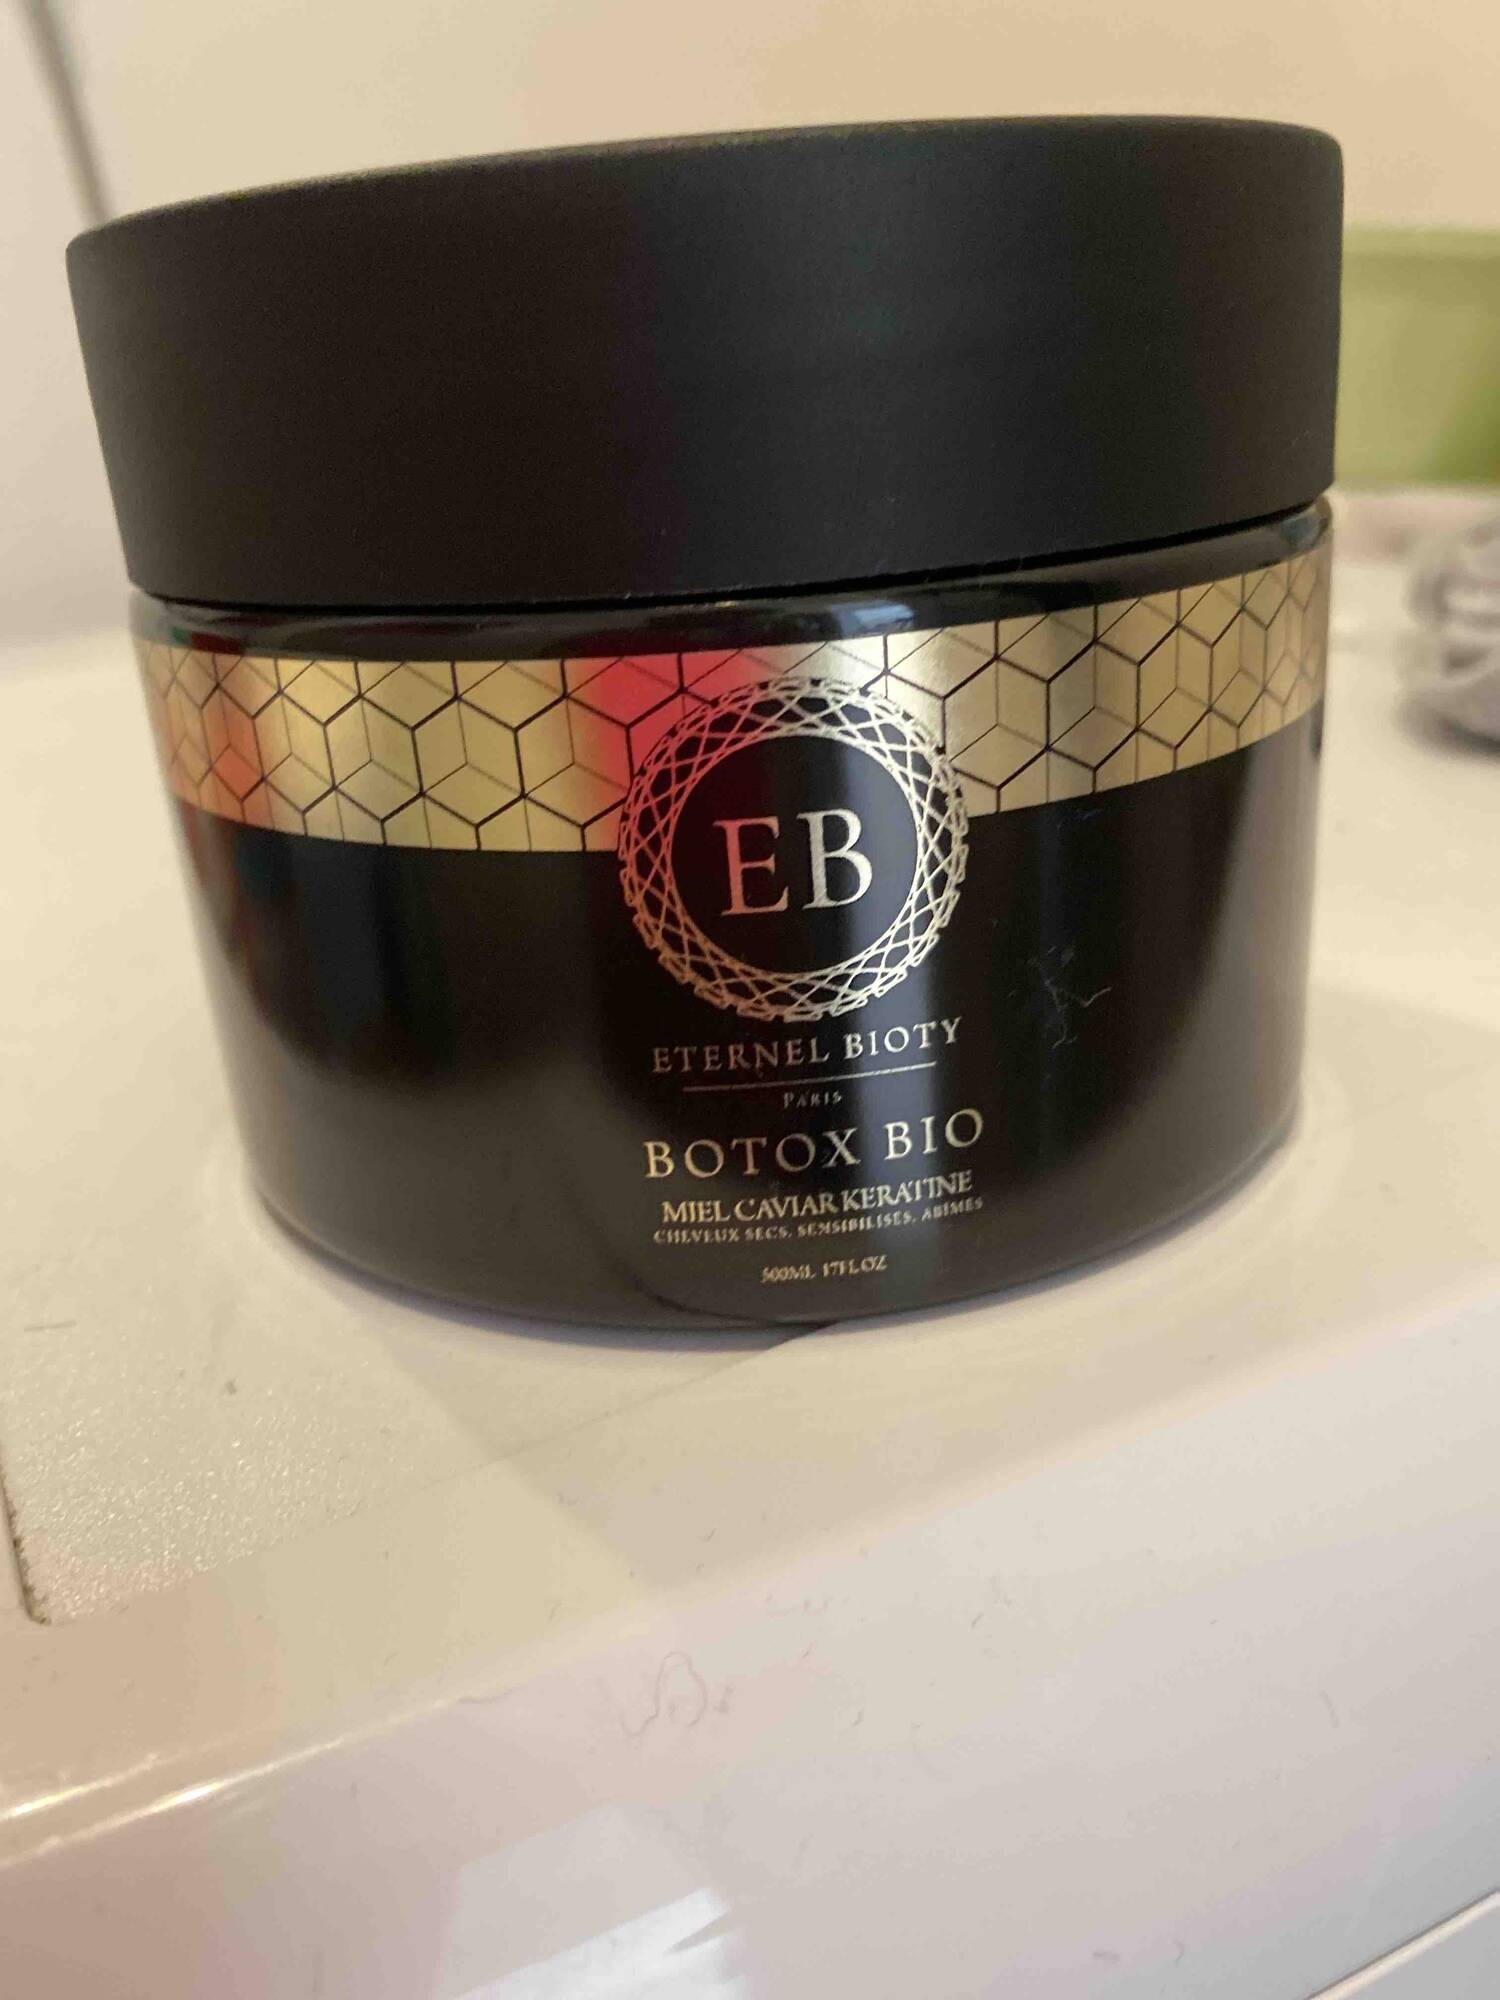 ETERNEL BIOTY - Botox Bio - Miel caviar kératine